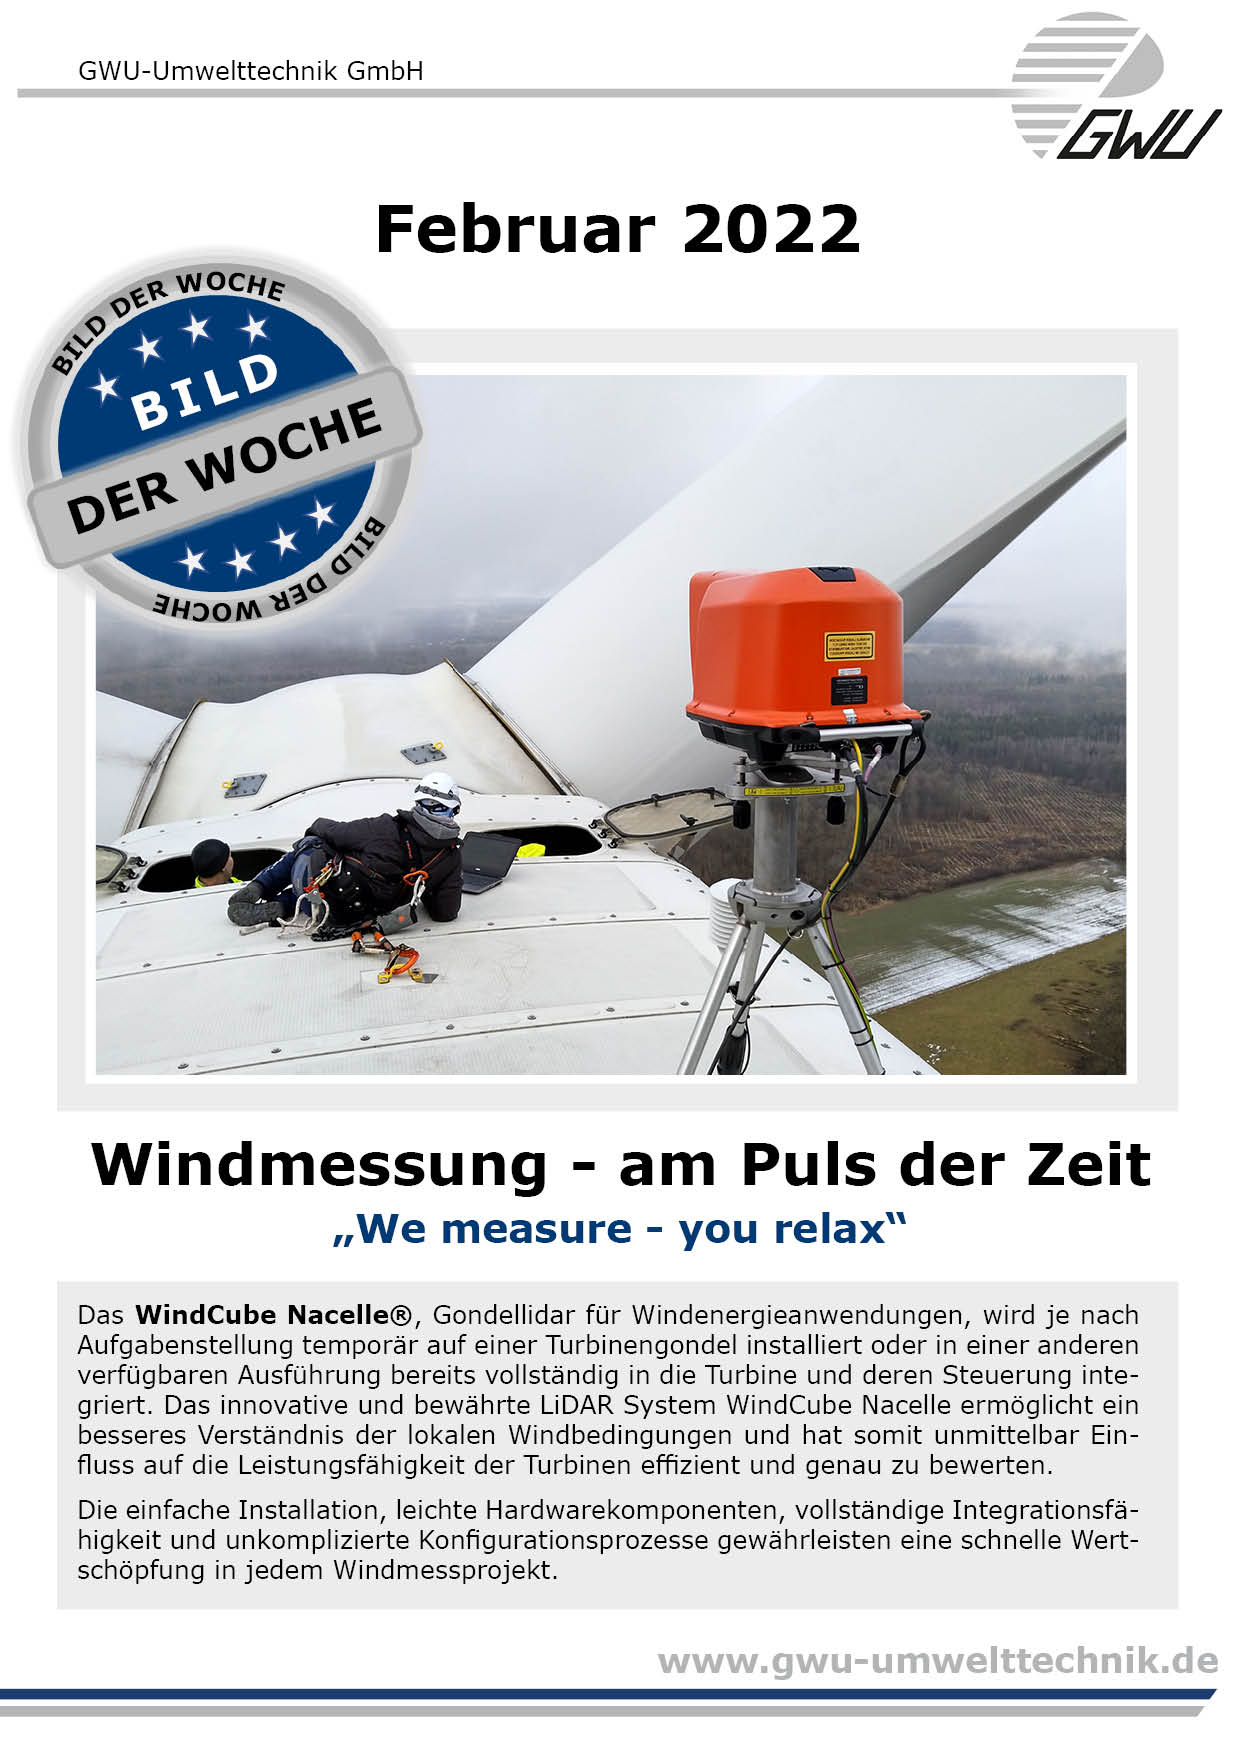 GWU WindCubeNacelle bild der woche 2022 02